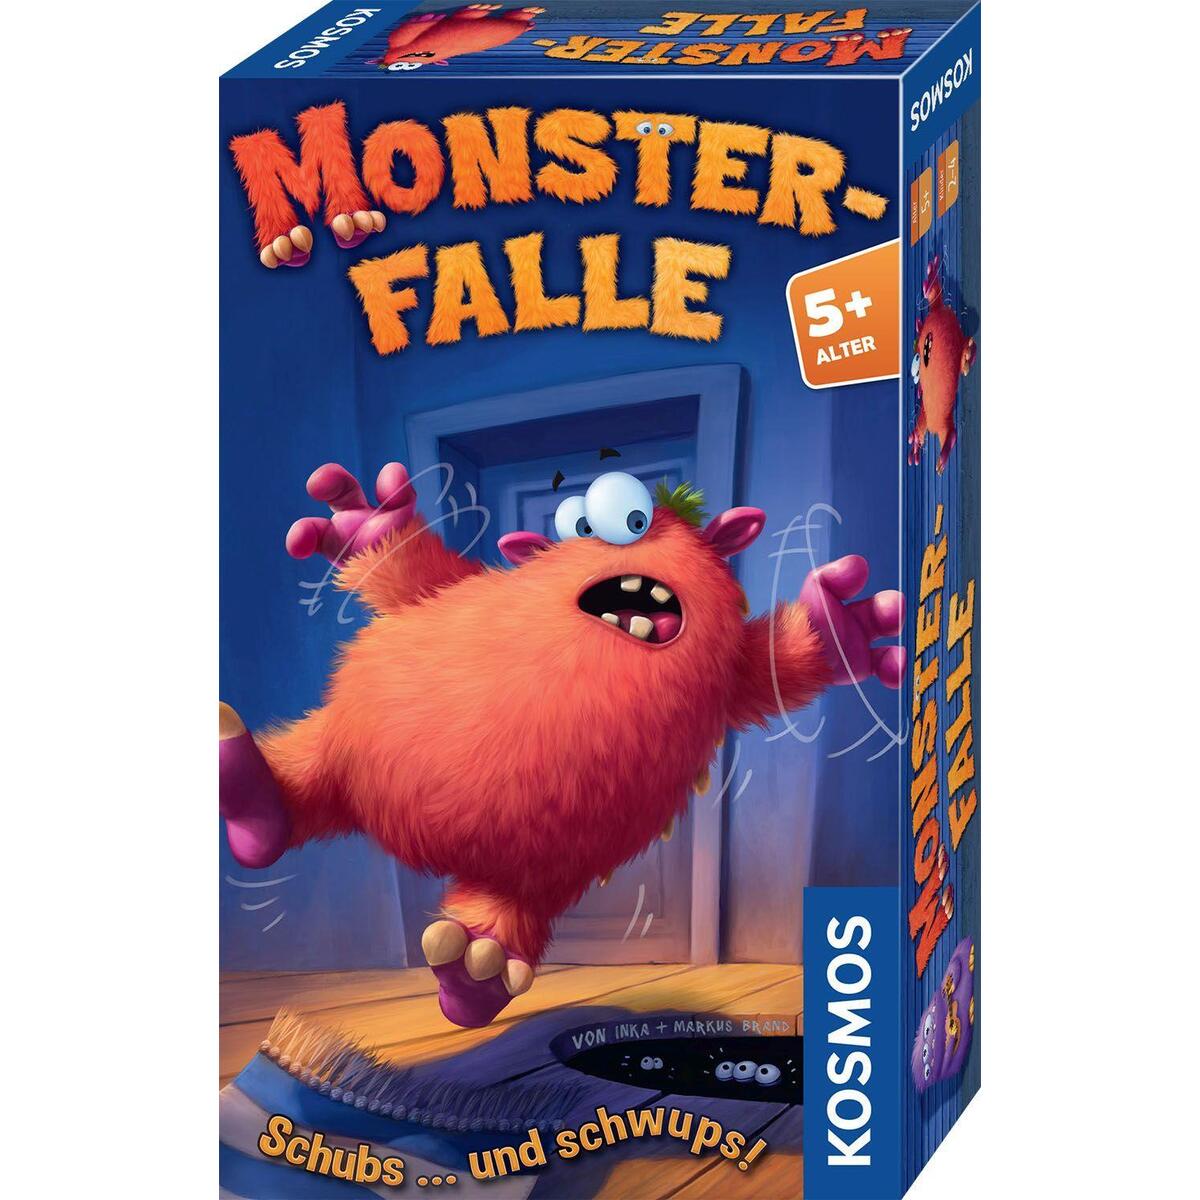 Monsterfalle von Franckh-Kosmos